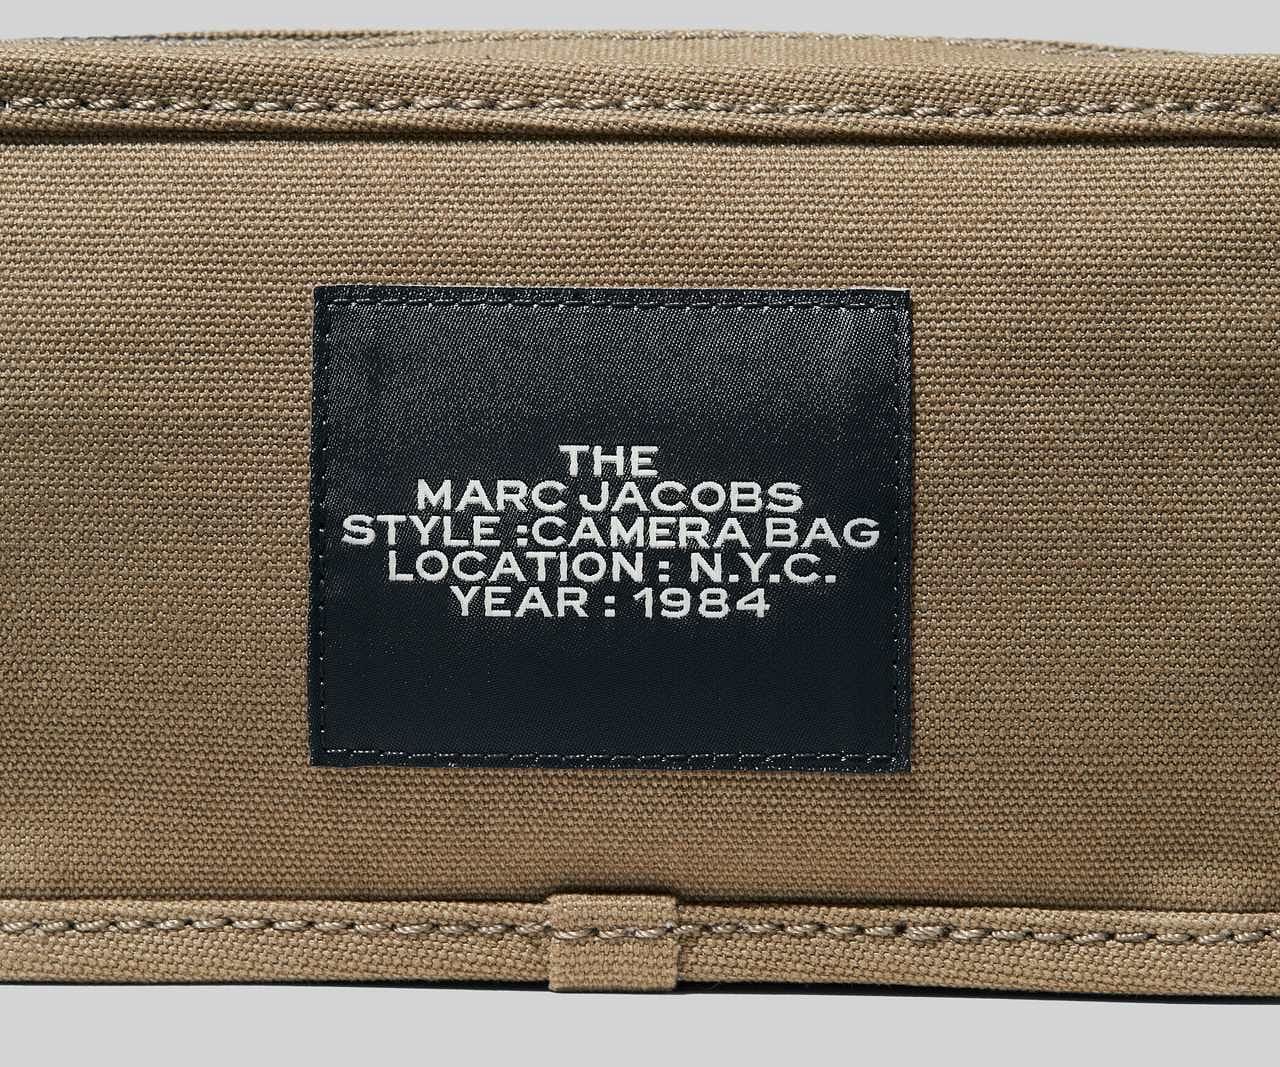 The Camera Bag